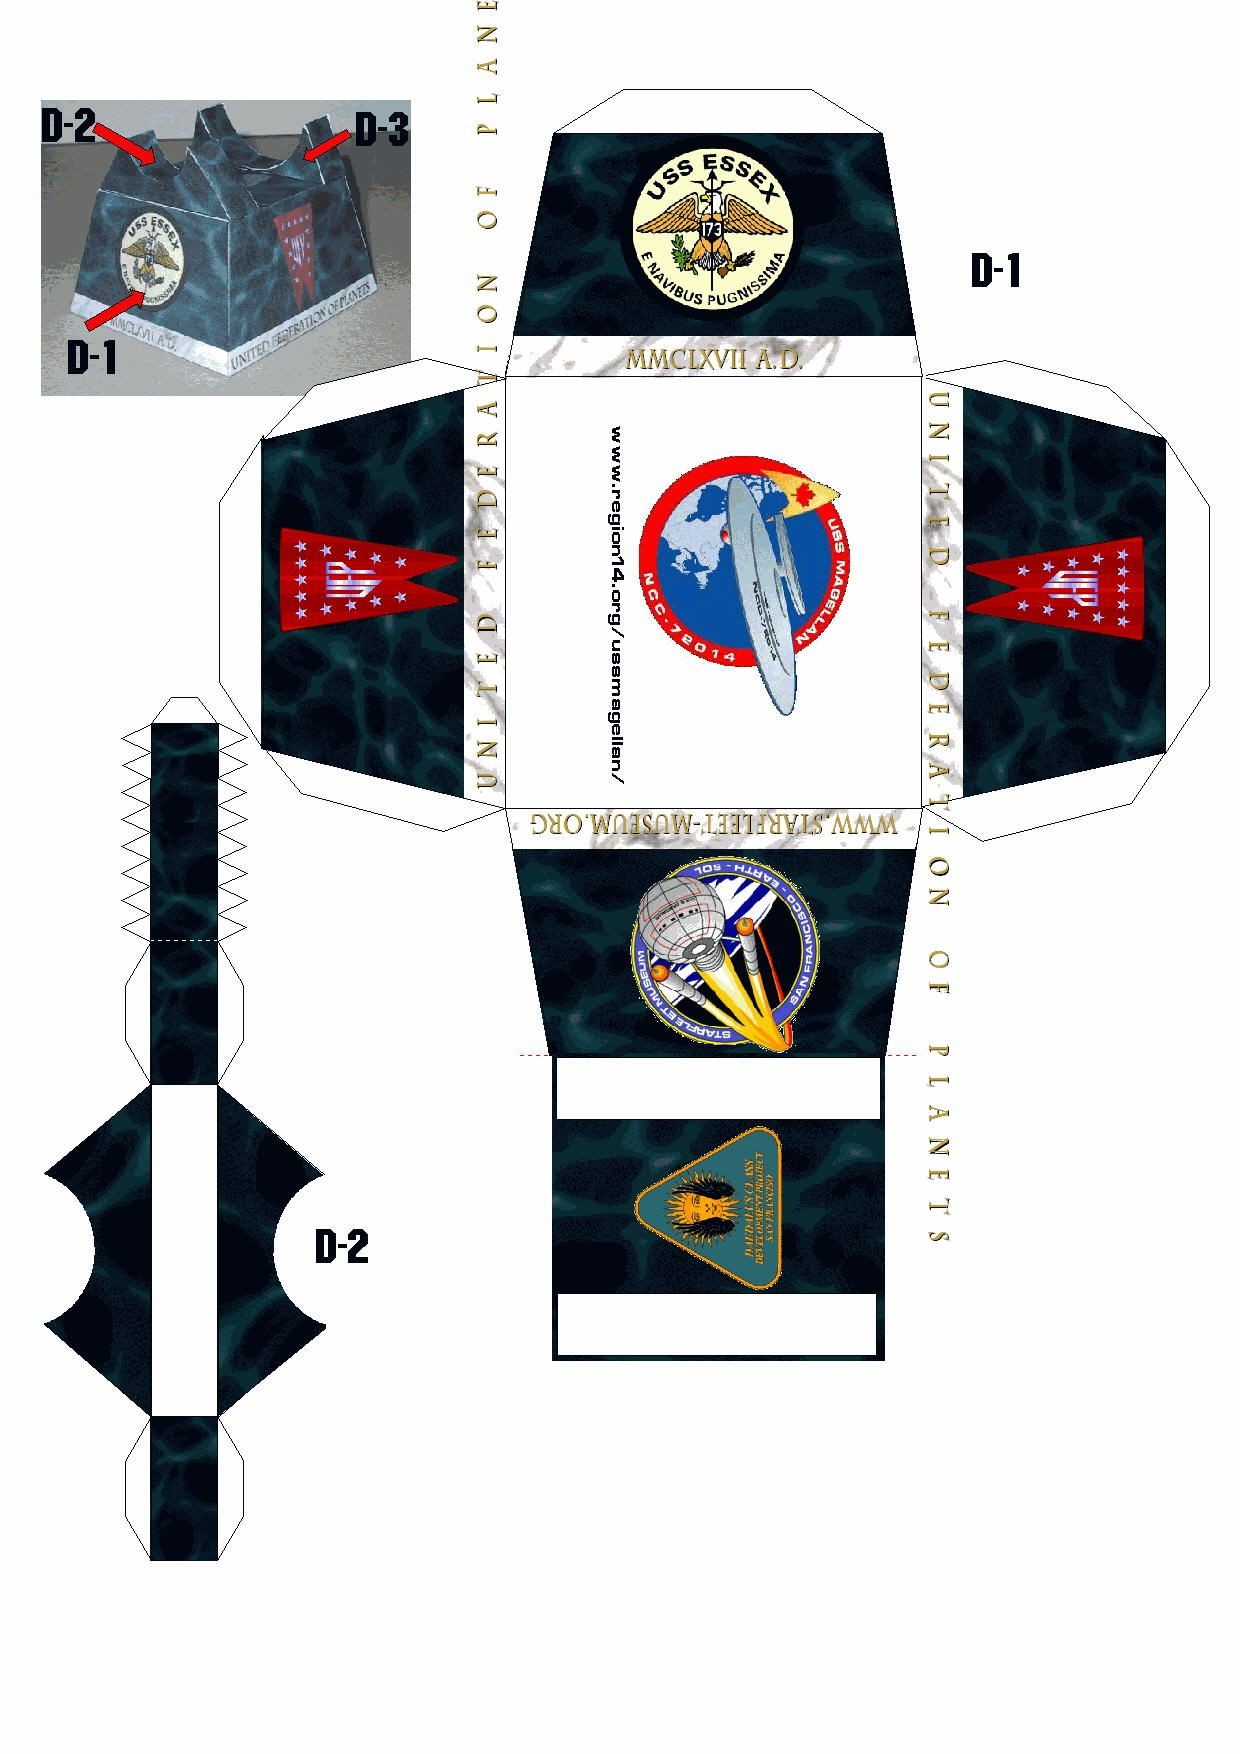 Star Trek Papercraft Uss Es A Daedalus Class Starship Card Paper Models